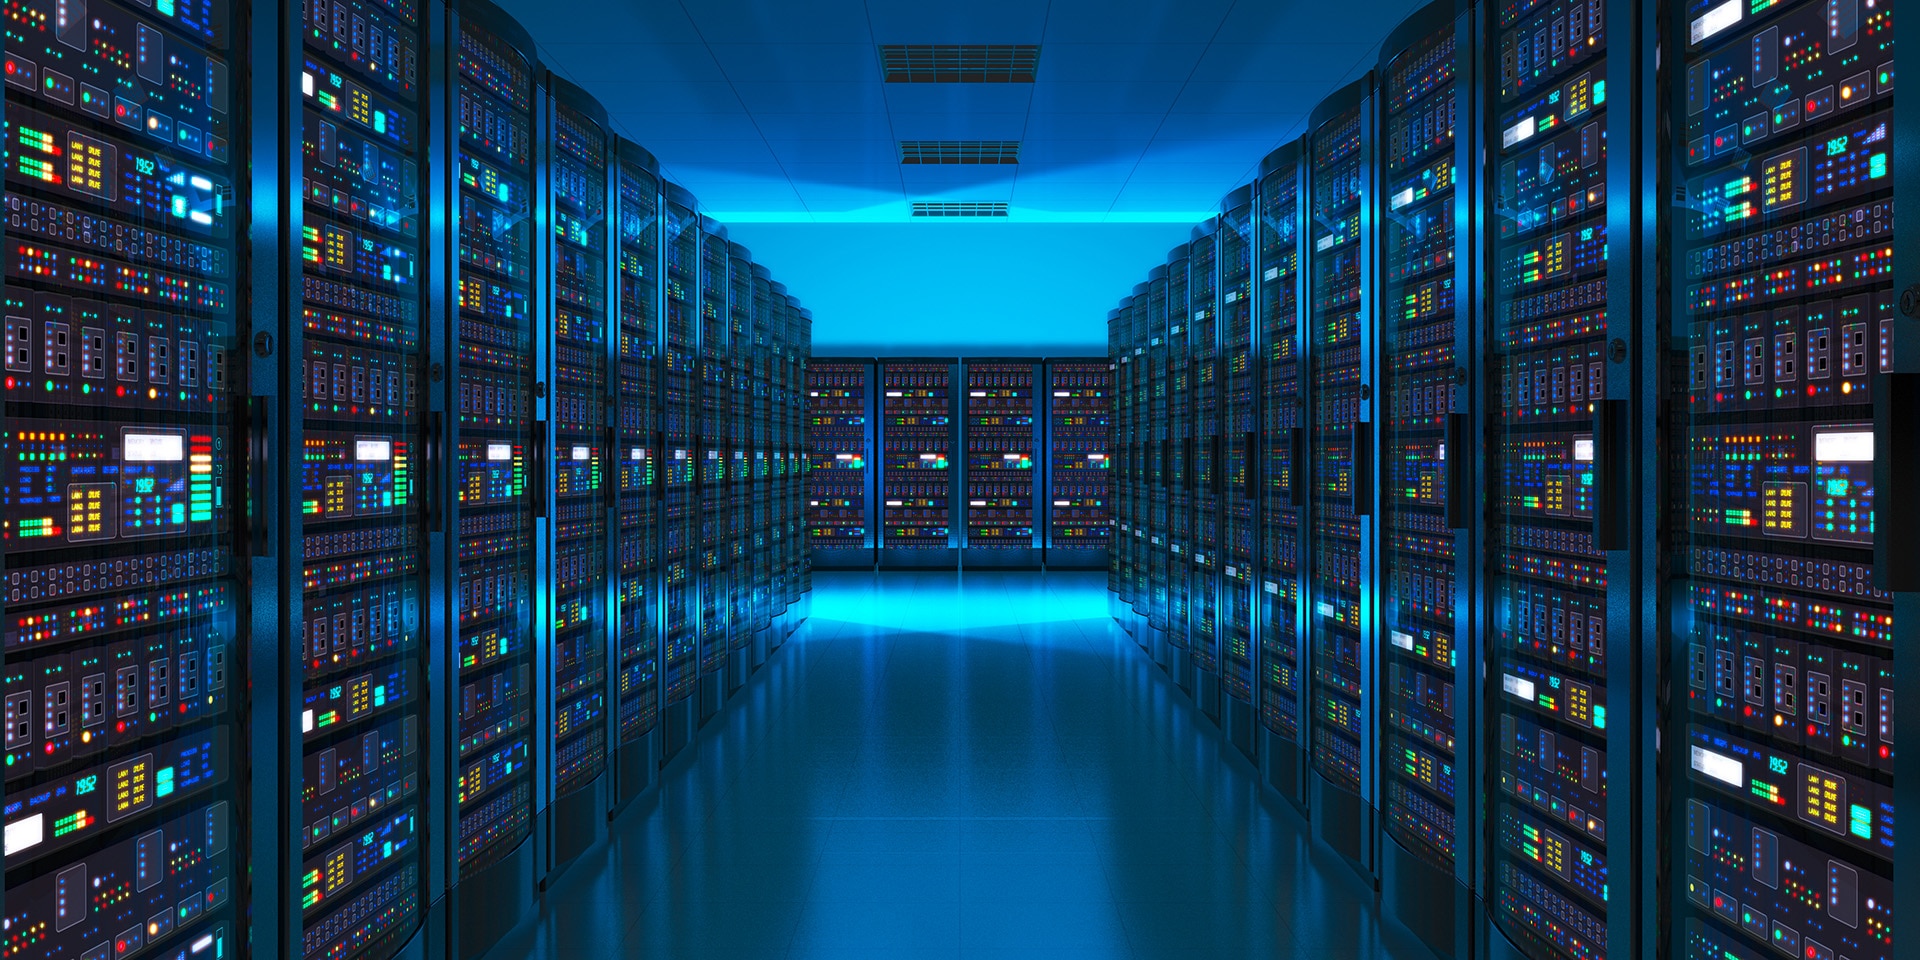 On entre dans une salle sombre, à la lueur bleue, compartimentée en rayon par une multitude de serveurs où sont stockées les données numériques.